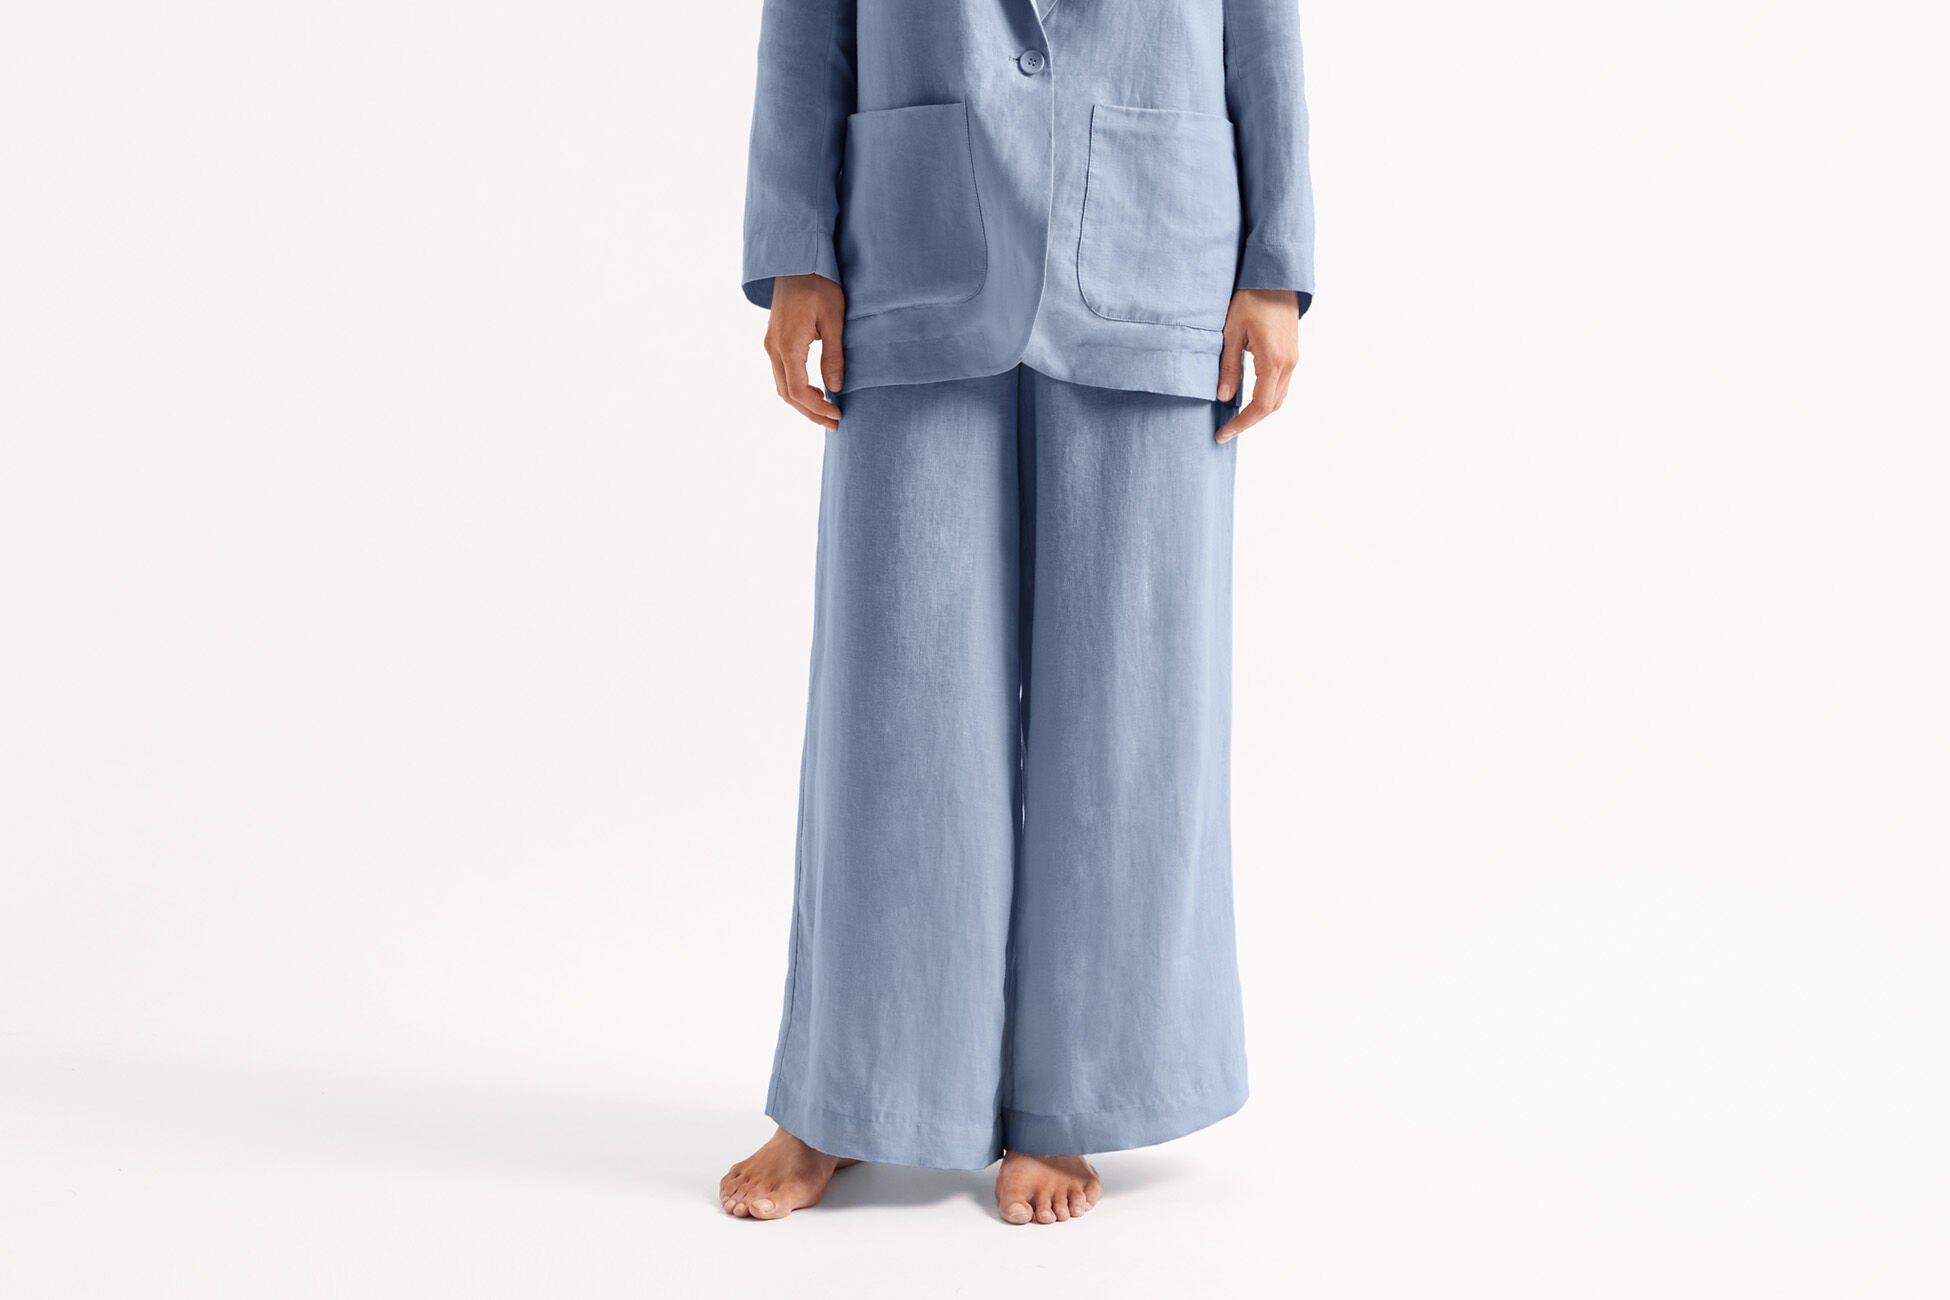 Select Large trousers standard view NaN